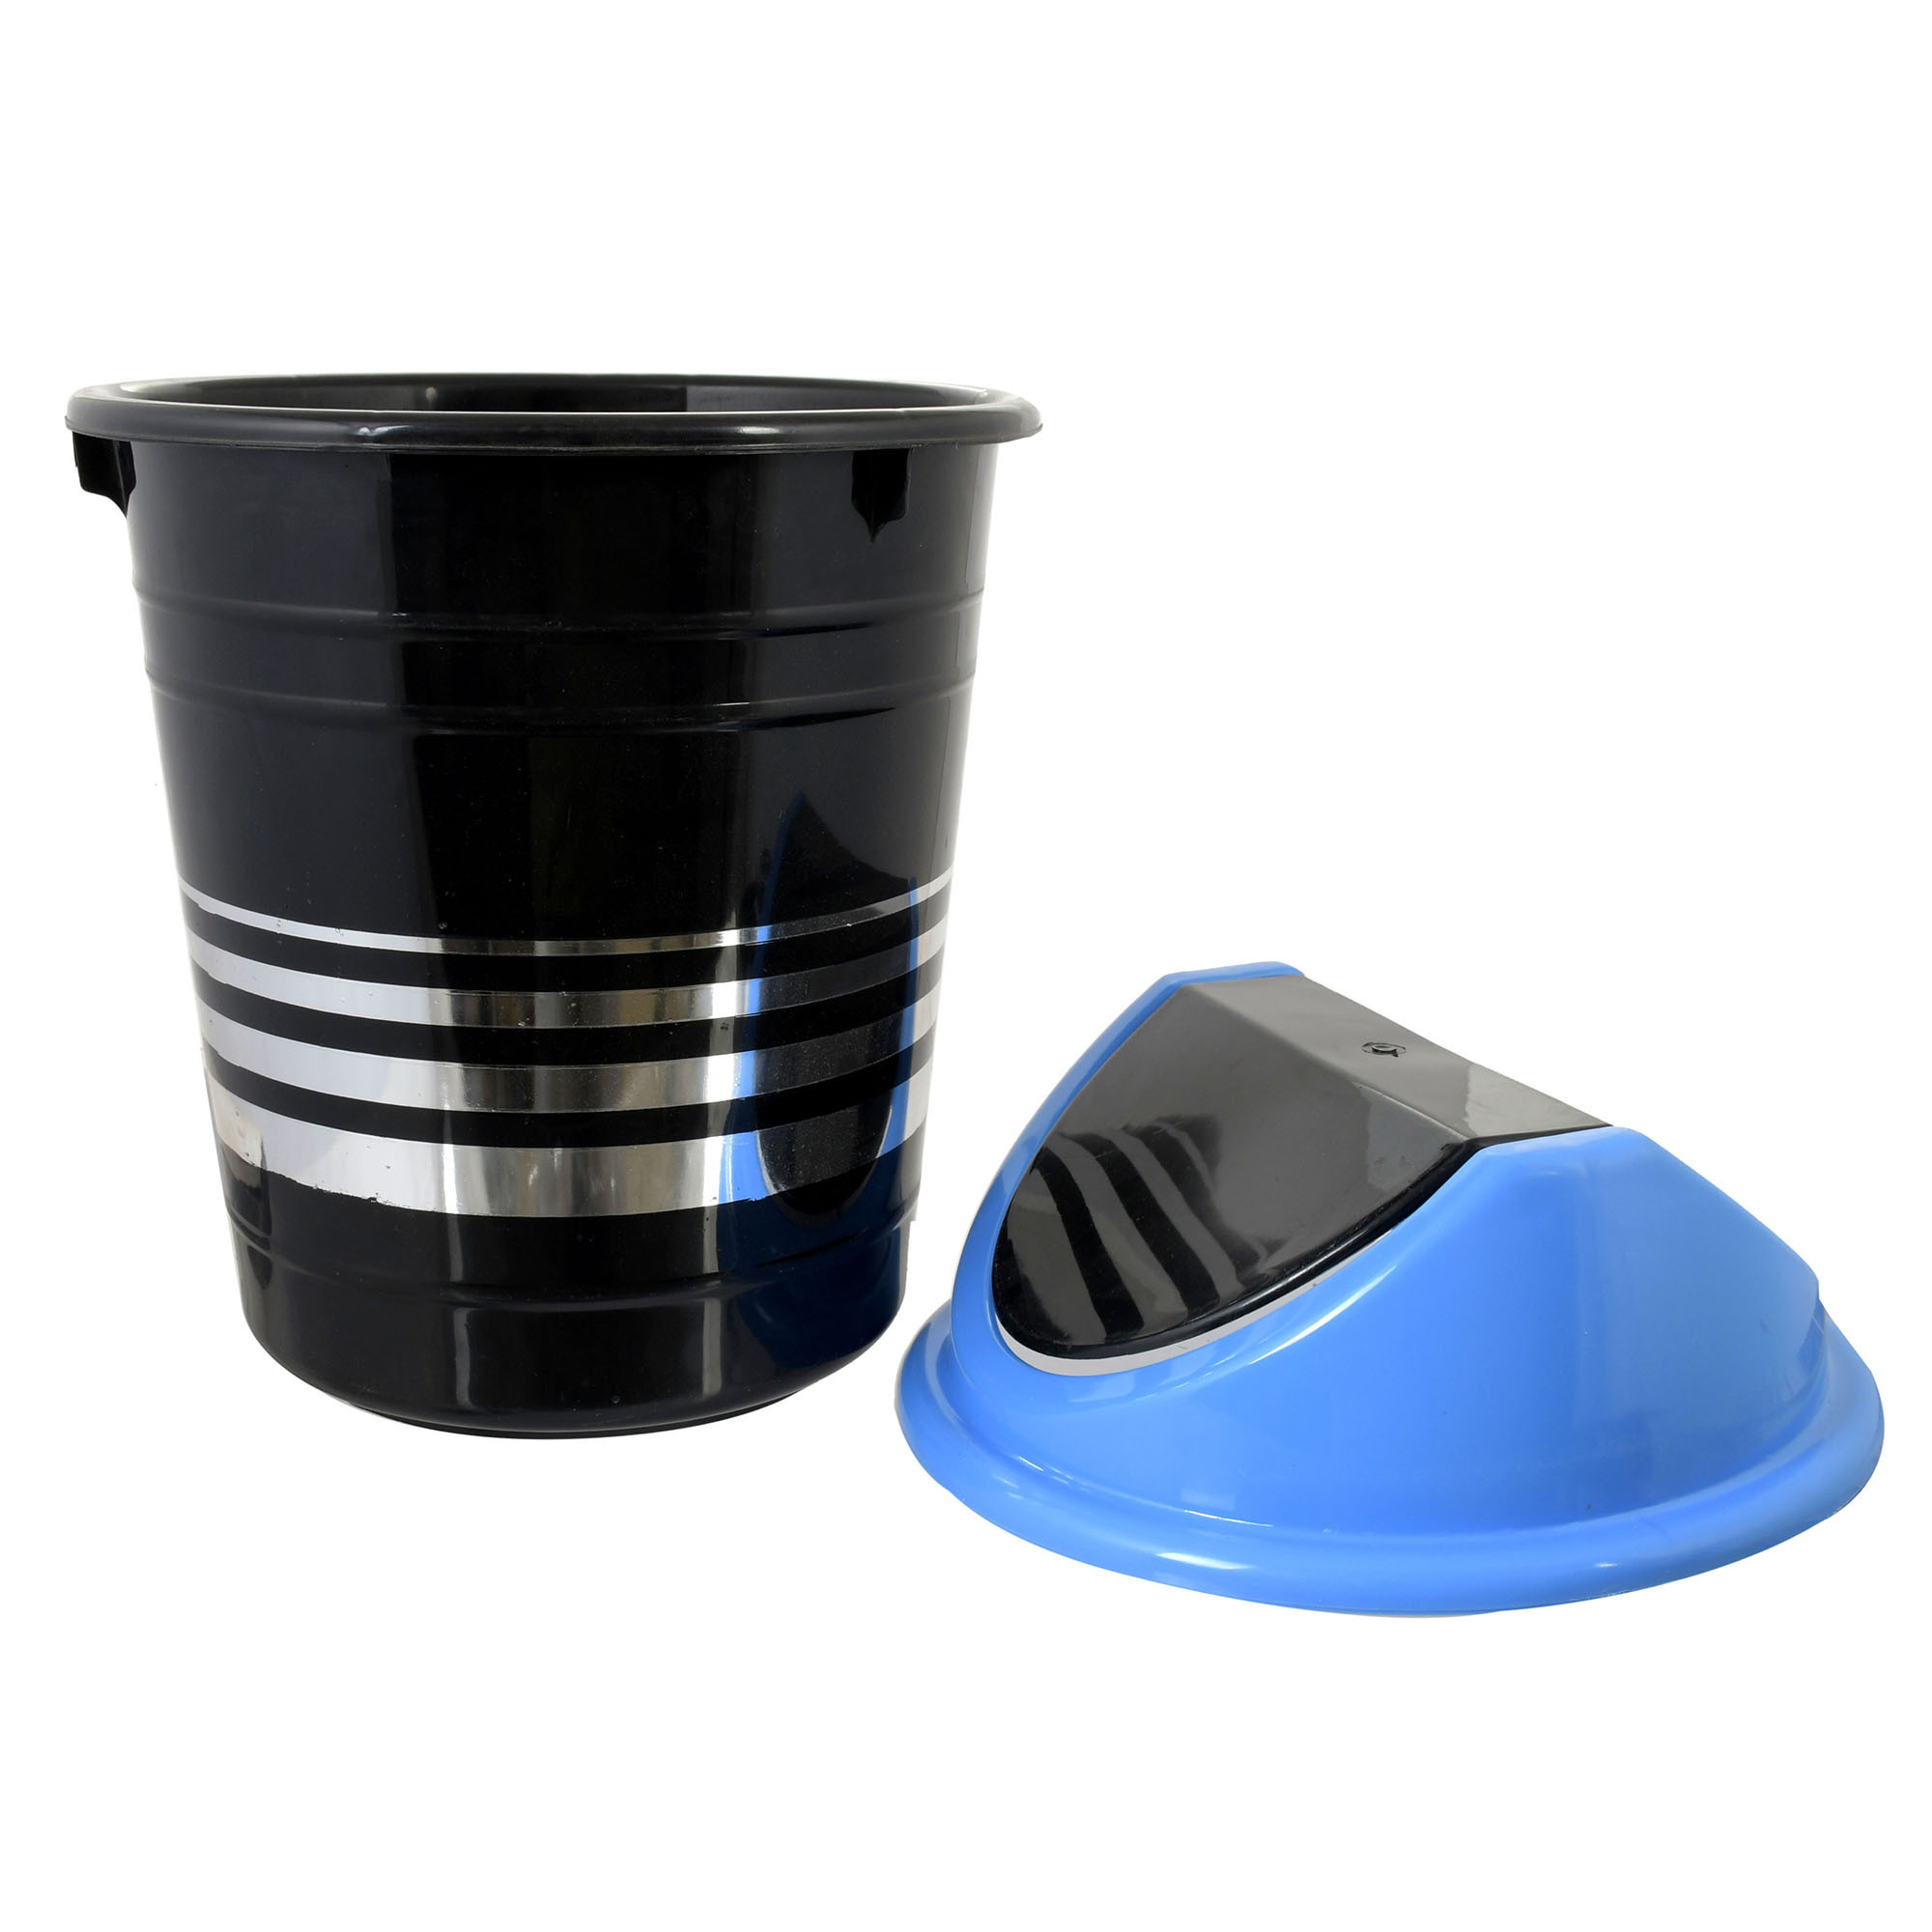 Kuber Industries Plastic 2 Pieces Medium Size Swing Dustbin/ Swing Garbage Bin/ Waste Bin, 10 Liters (Blue & Yellow)